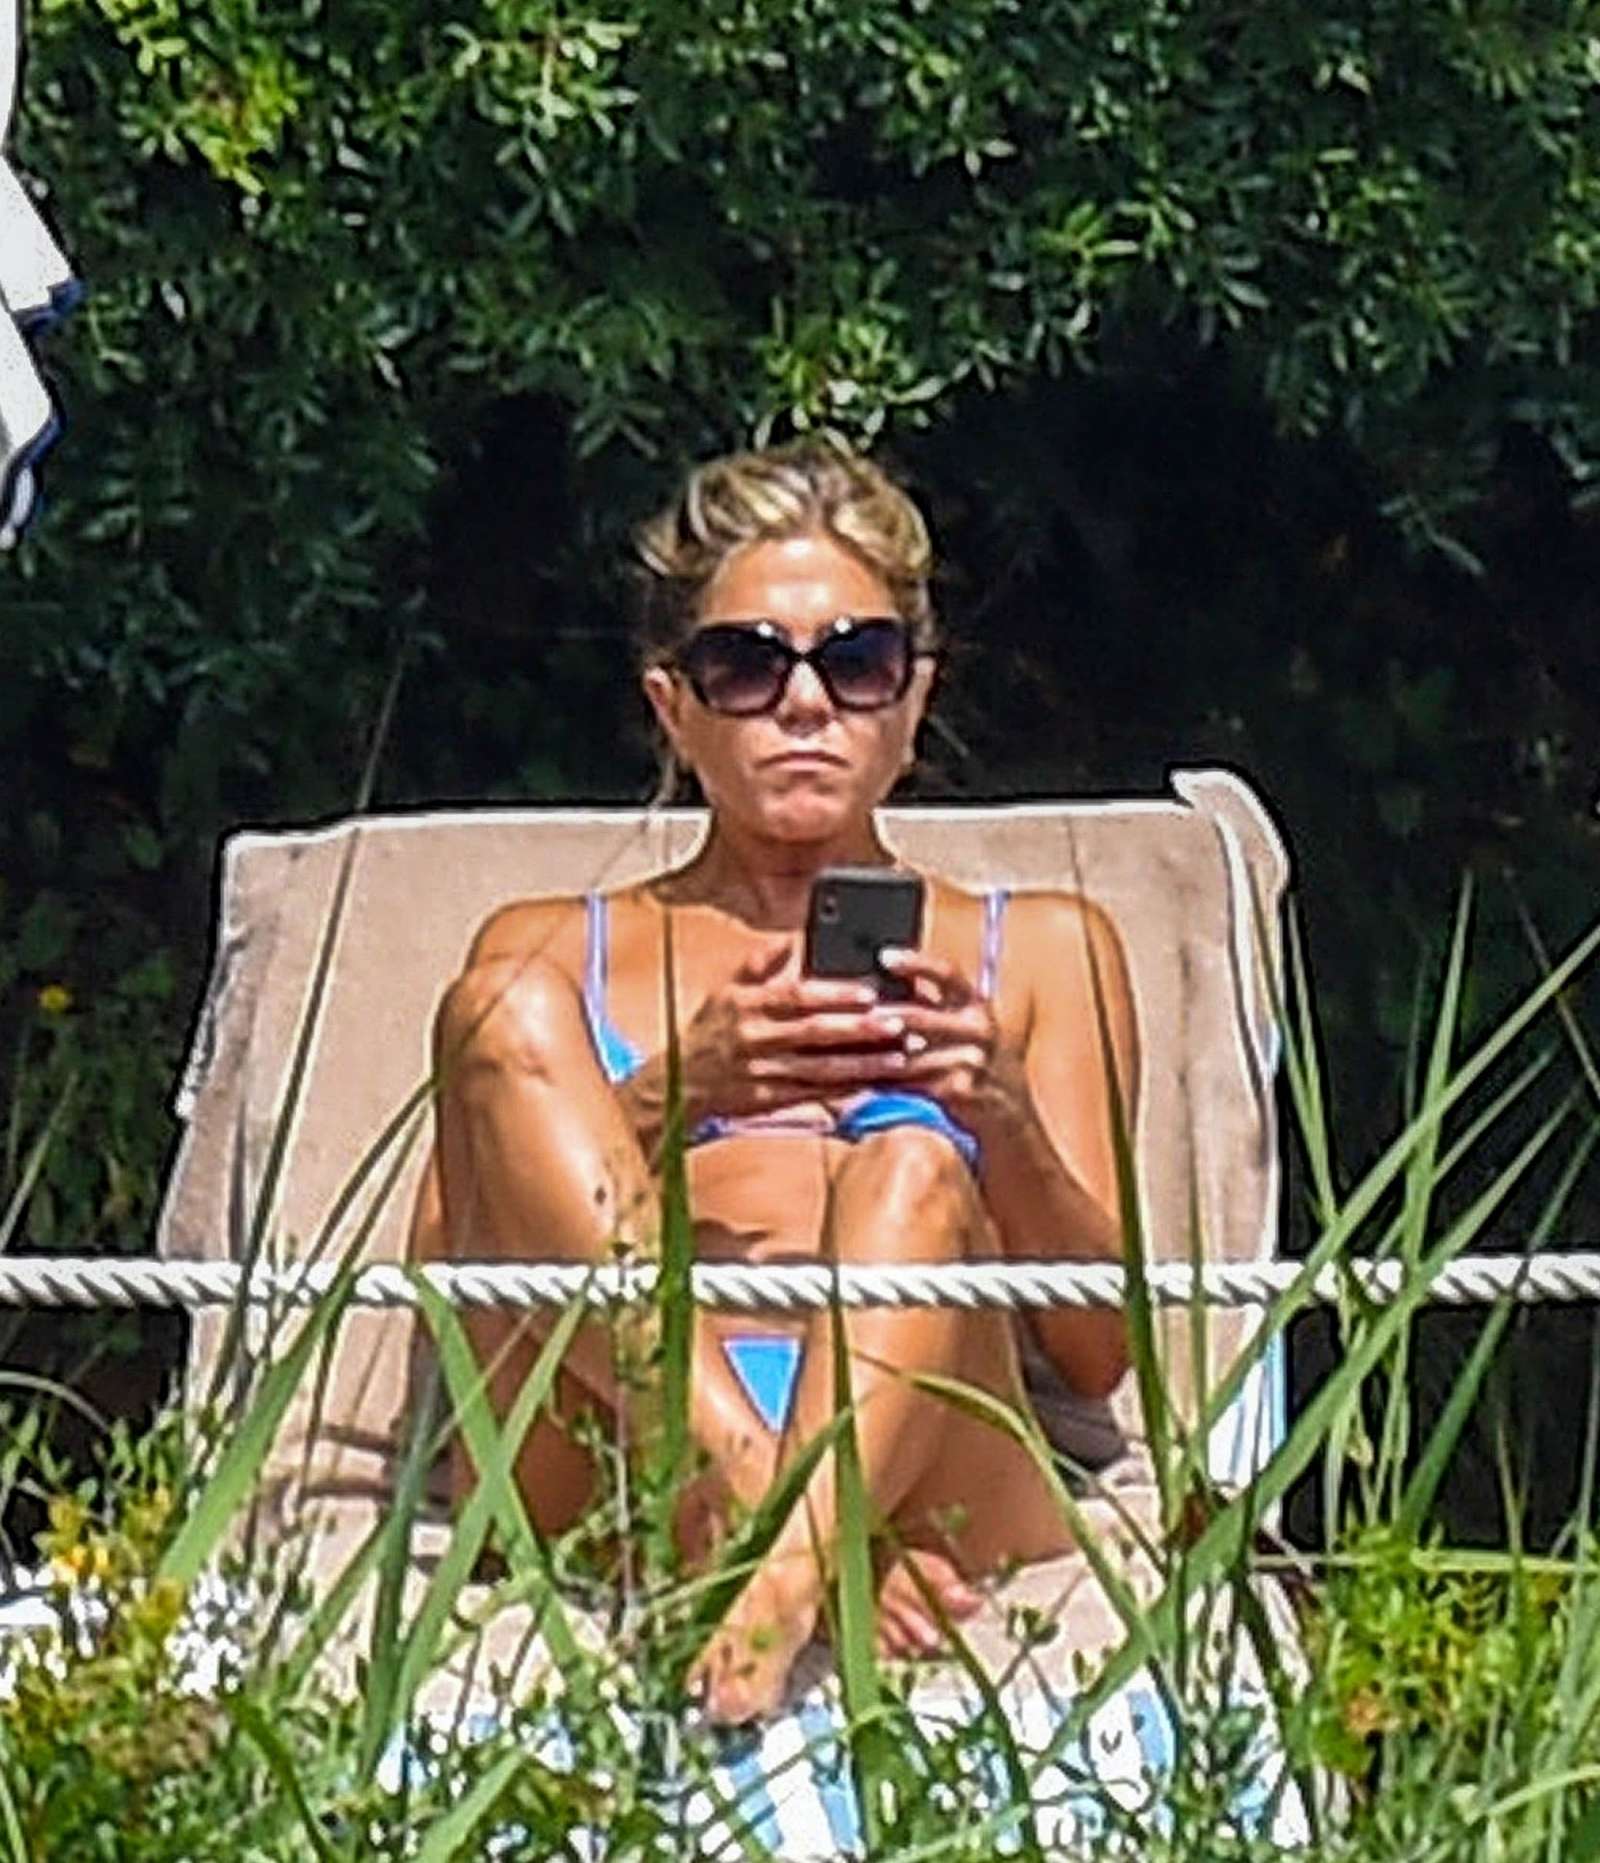 Jennifer aniston papparazzi bikini